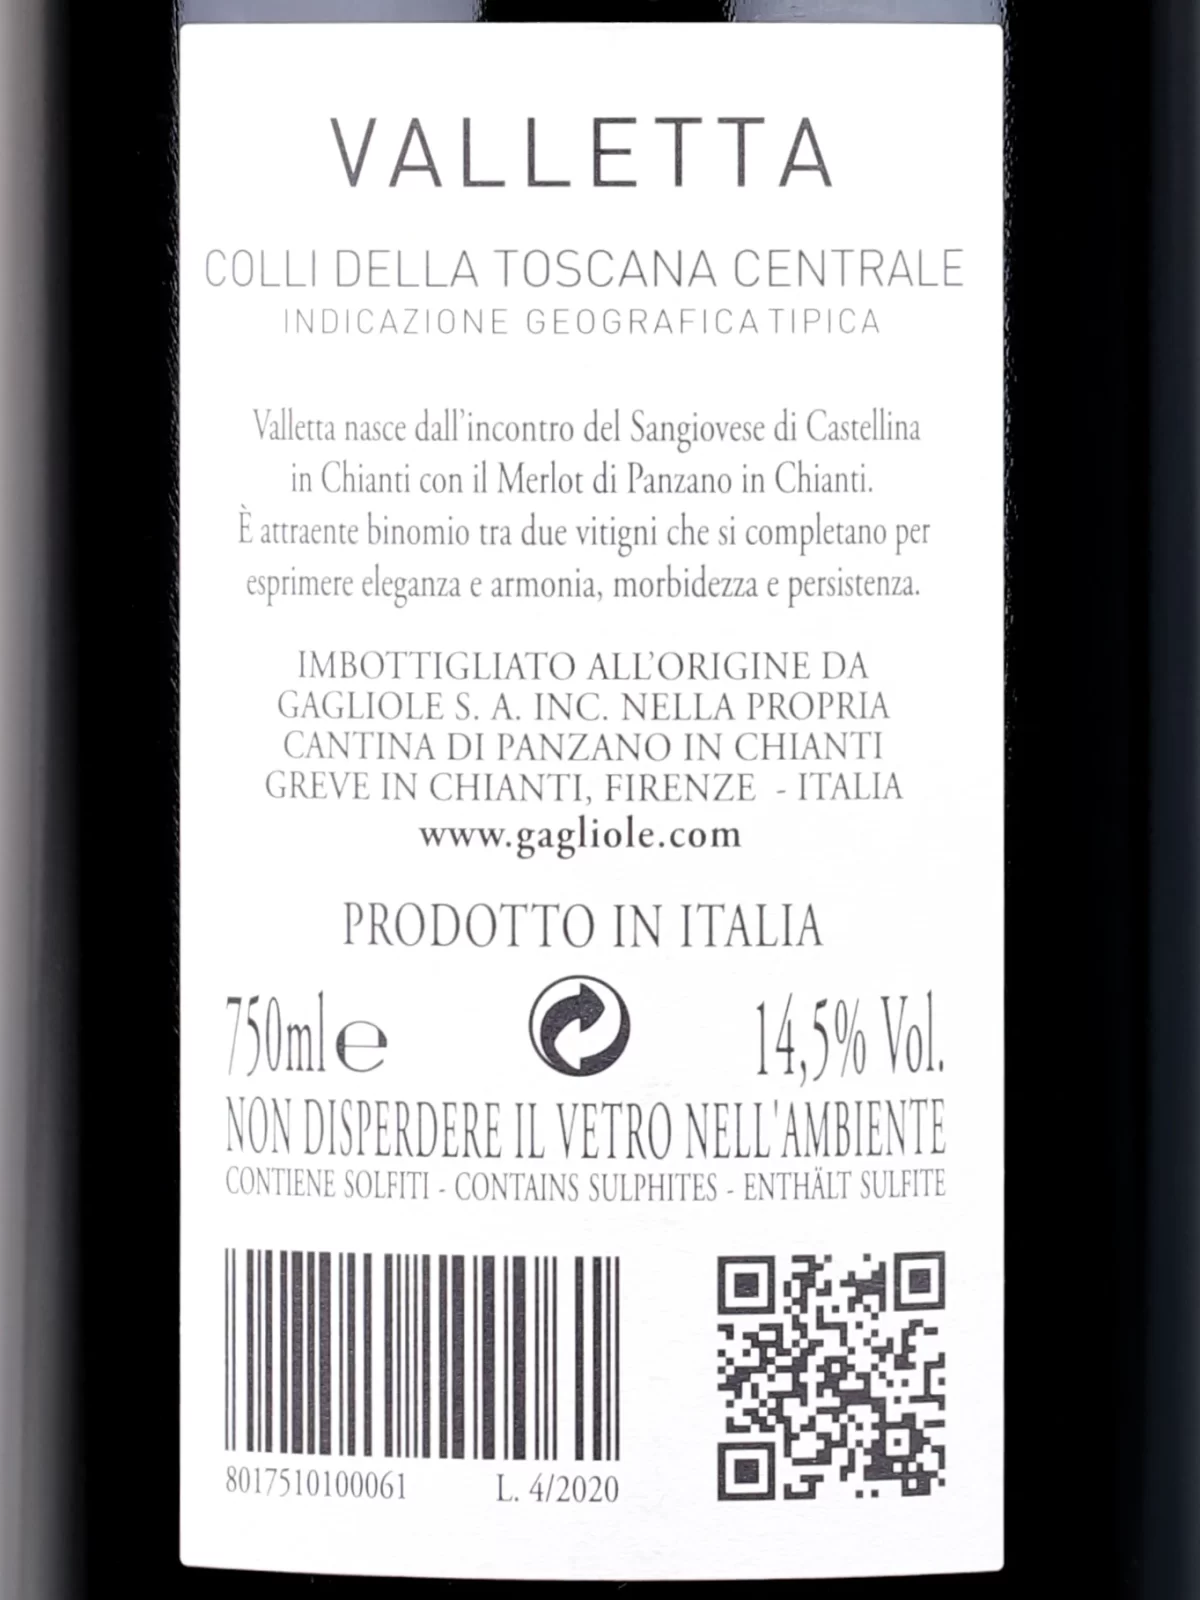 Back label of Gagliole Valletta Colli della Toscana Centrale IGT 2018